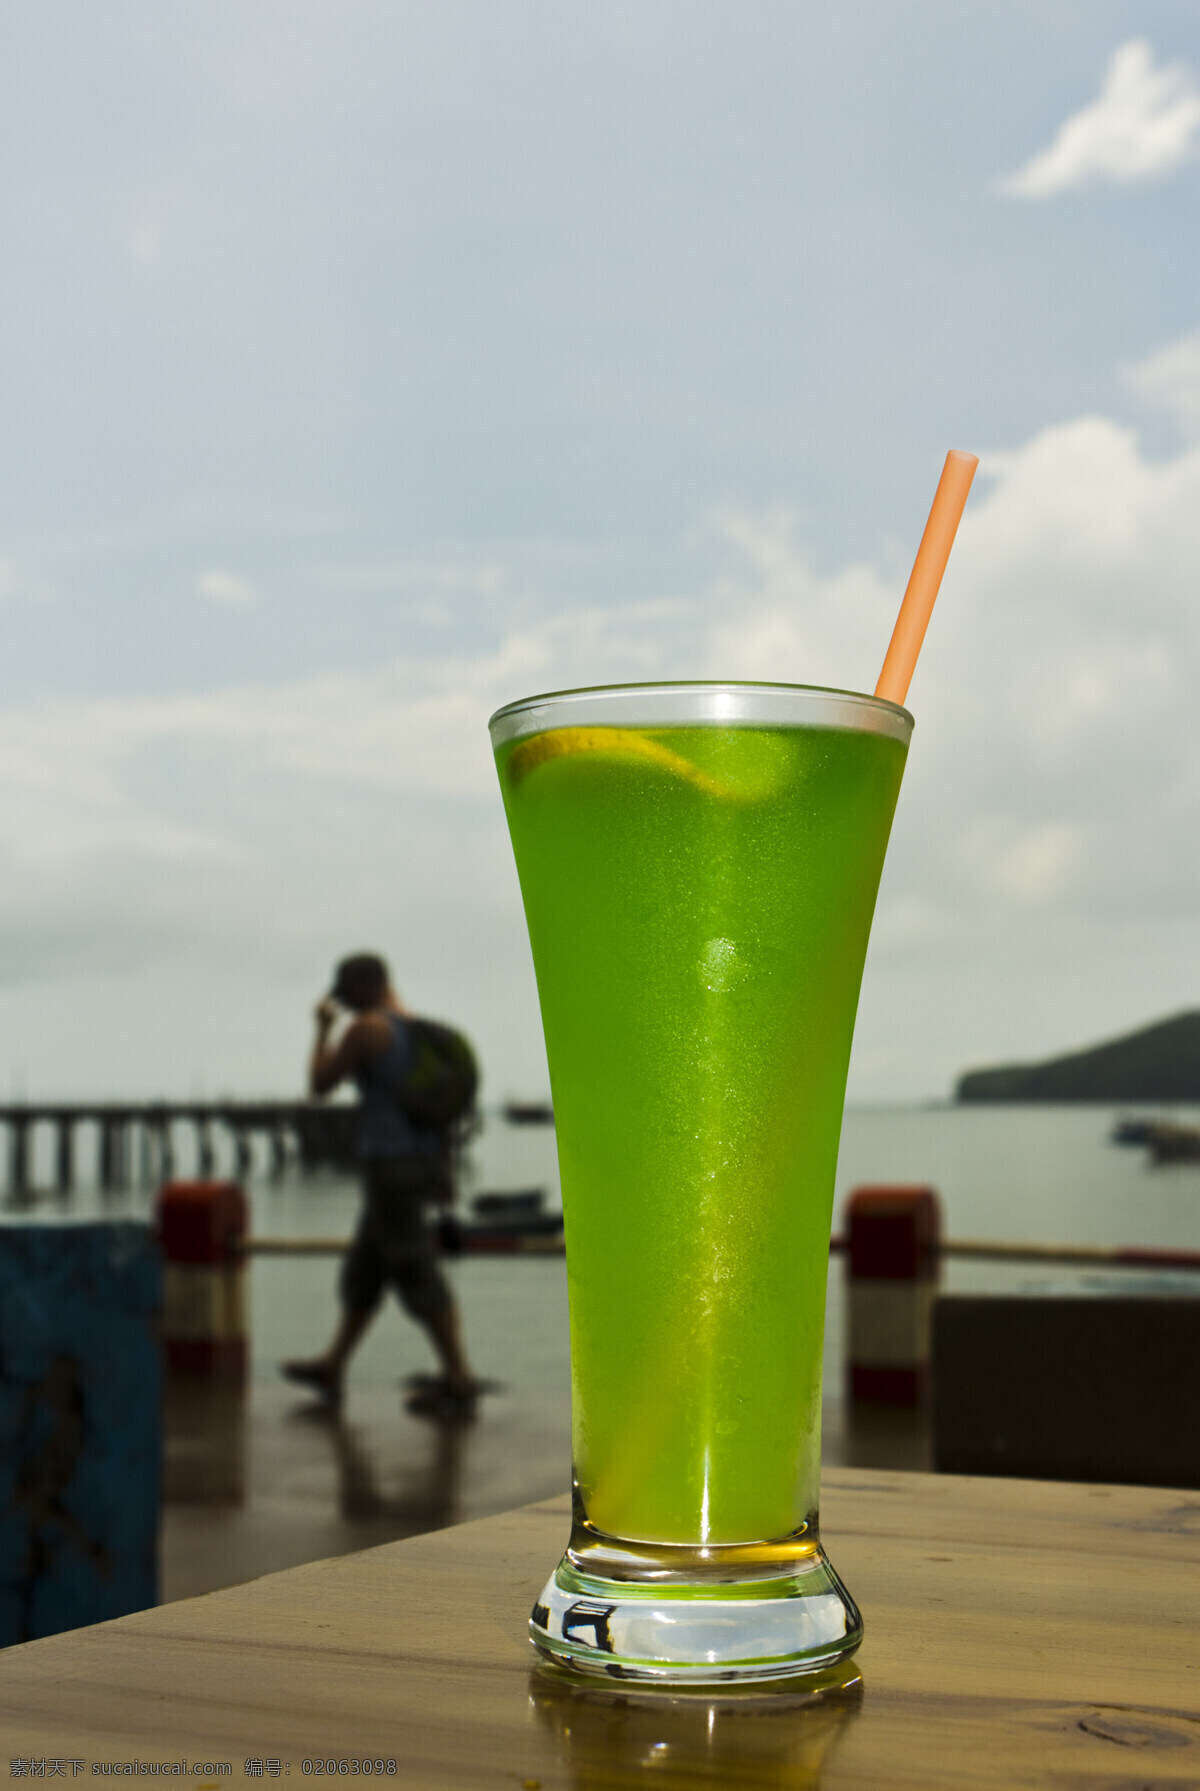 薄荷柠檬水 广西北海 涠洲岛 渔民码头 招牌 薄荷 柠檬水 饮料酒水 餐饮美食